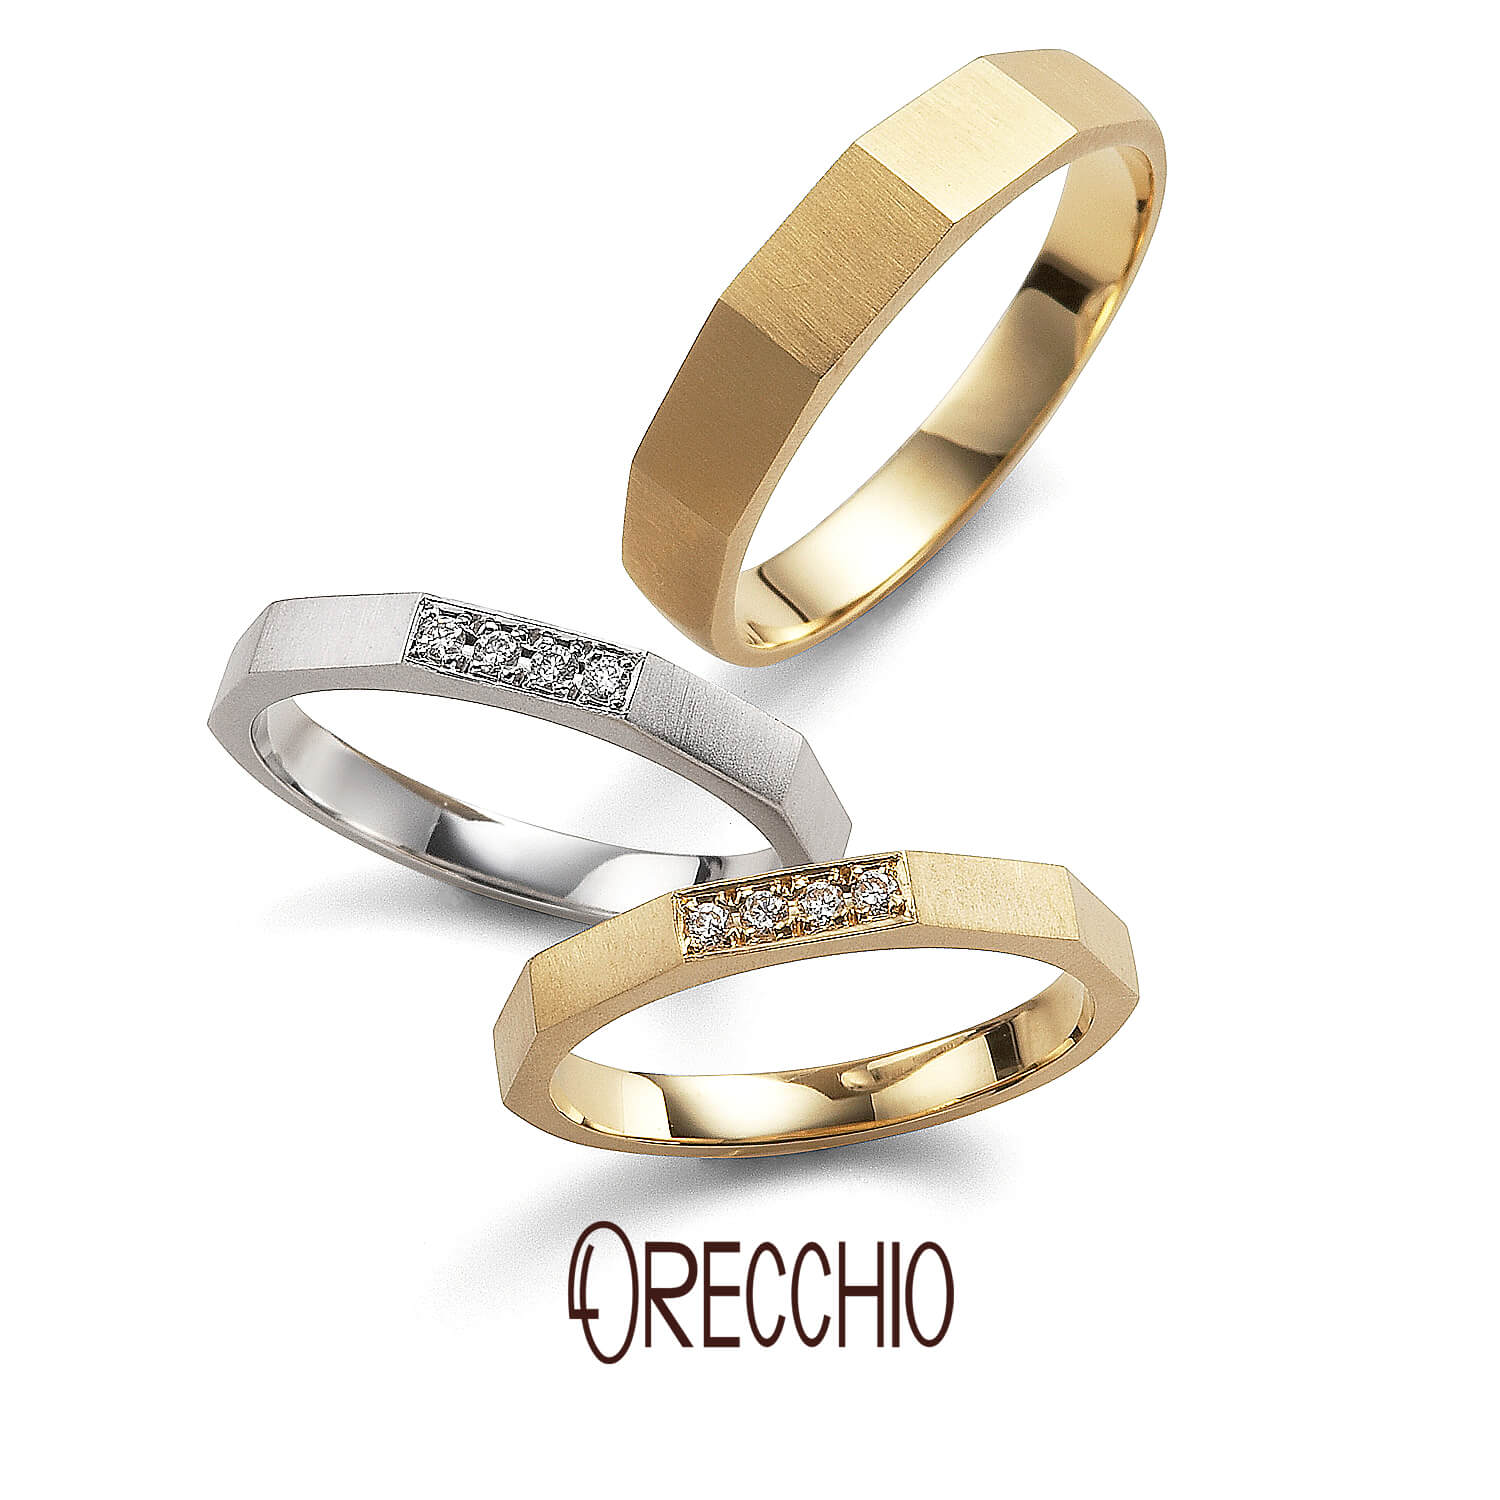 ORECCHIOオレッキオの結婚指輪safariサファリFM-2206とFM-2205